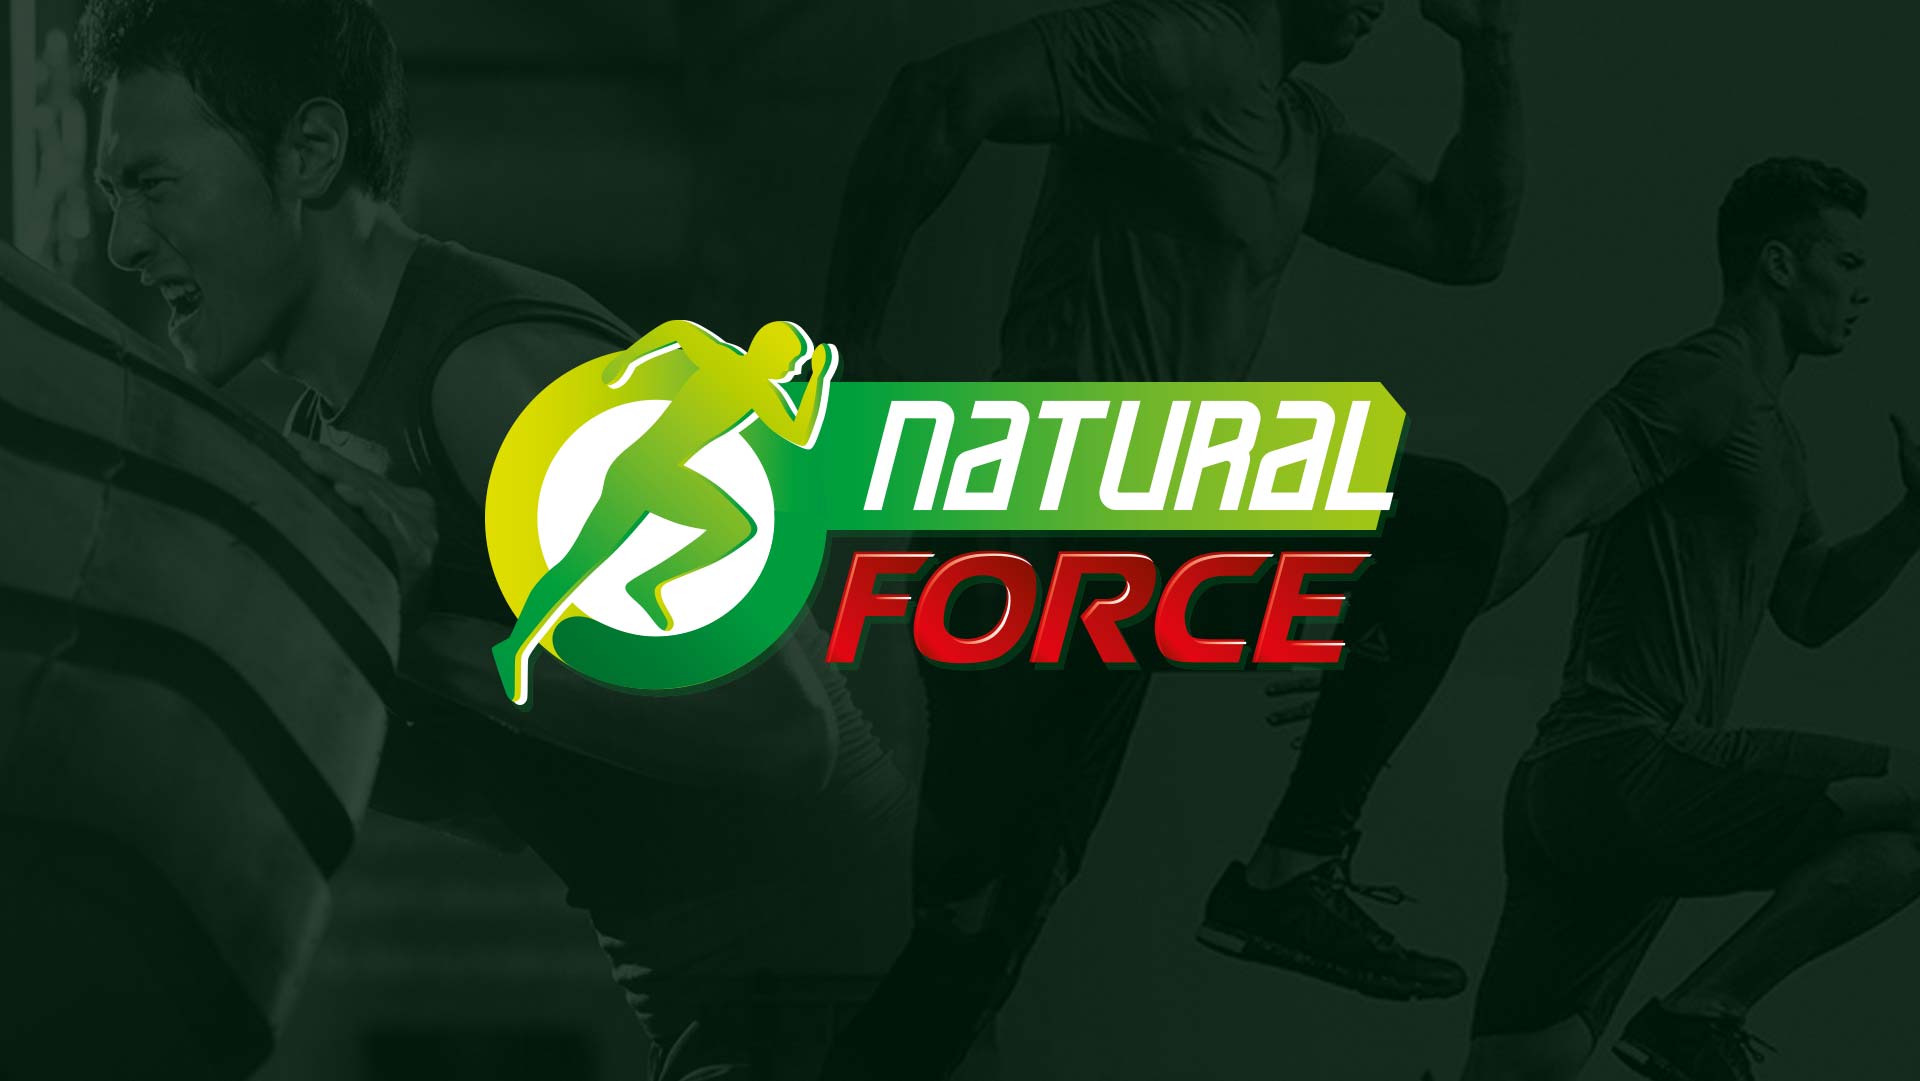 diseño-de-logotipo-y-etiqueta-natural-force-1